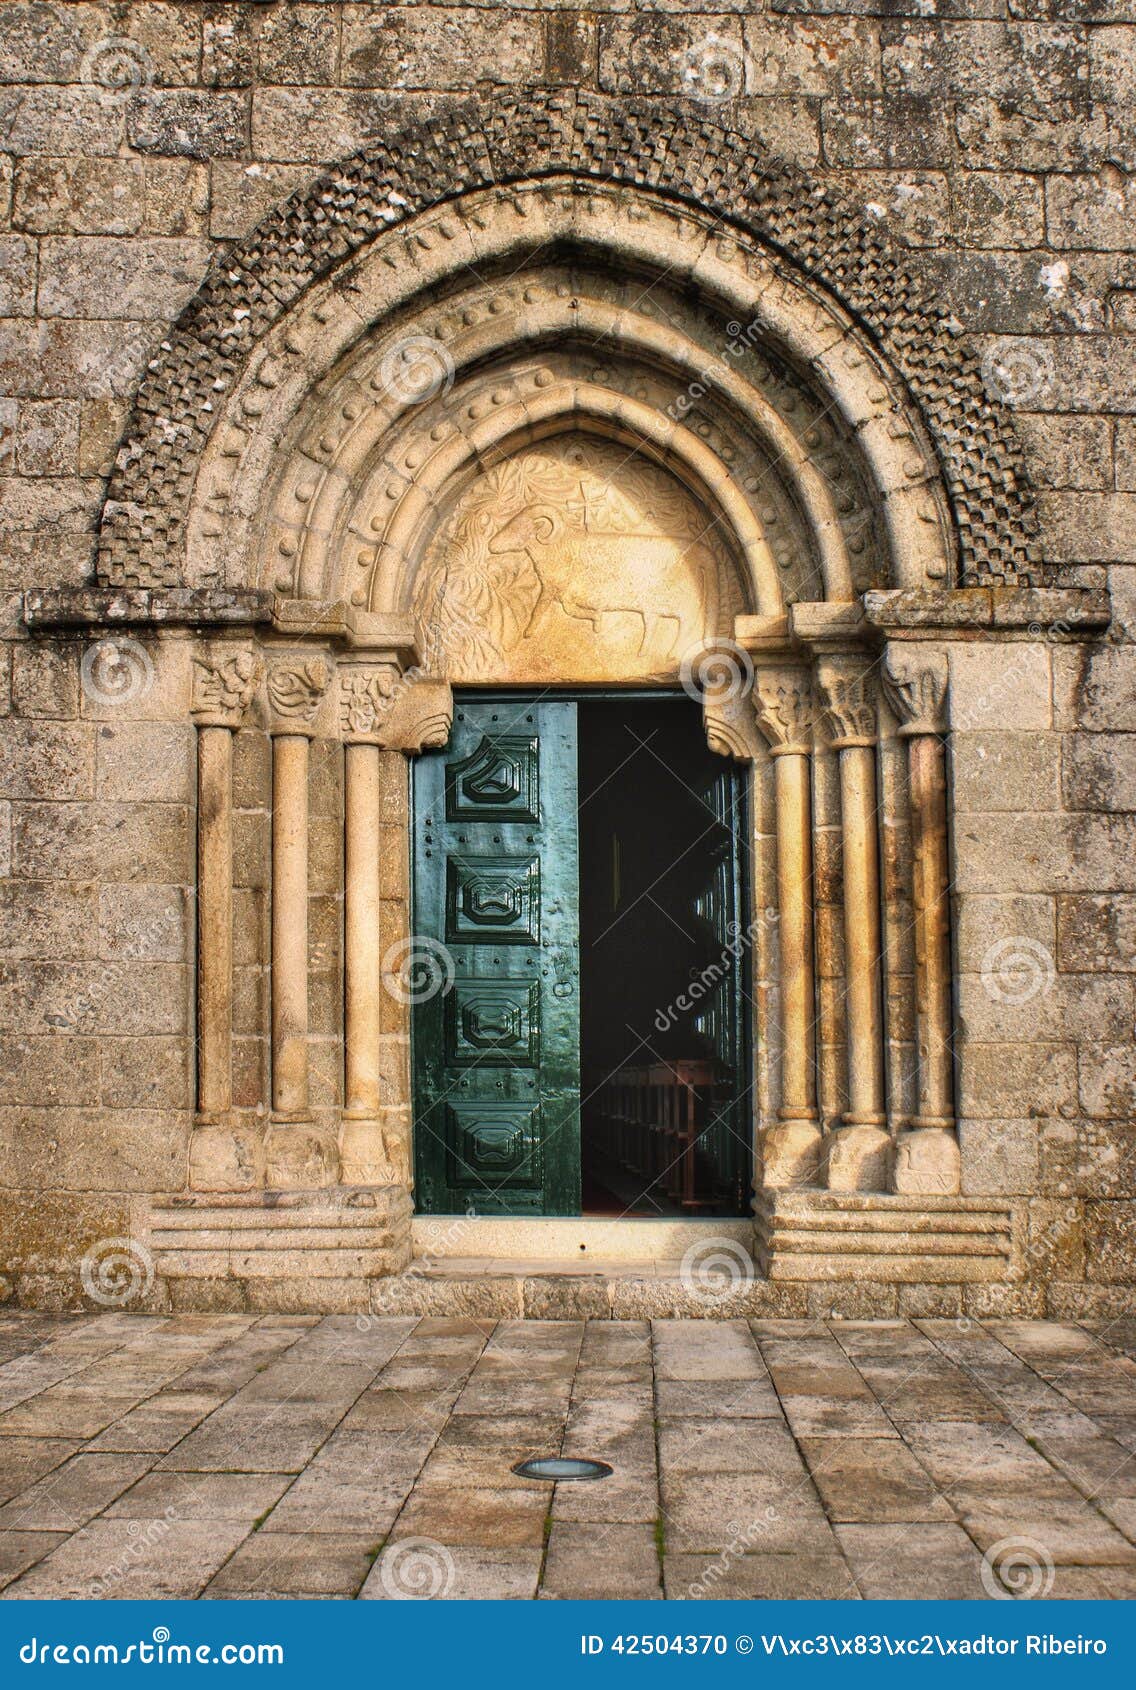 door detail of romanesque church